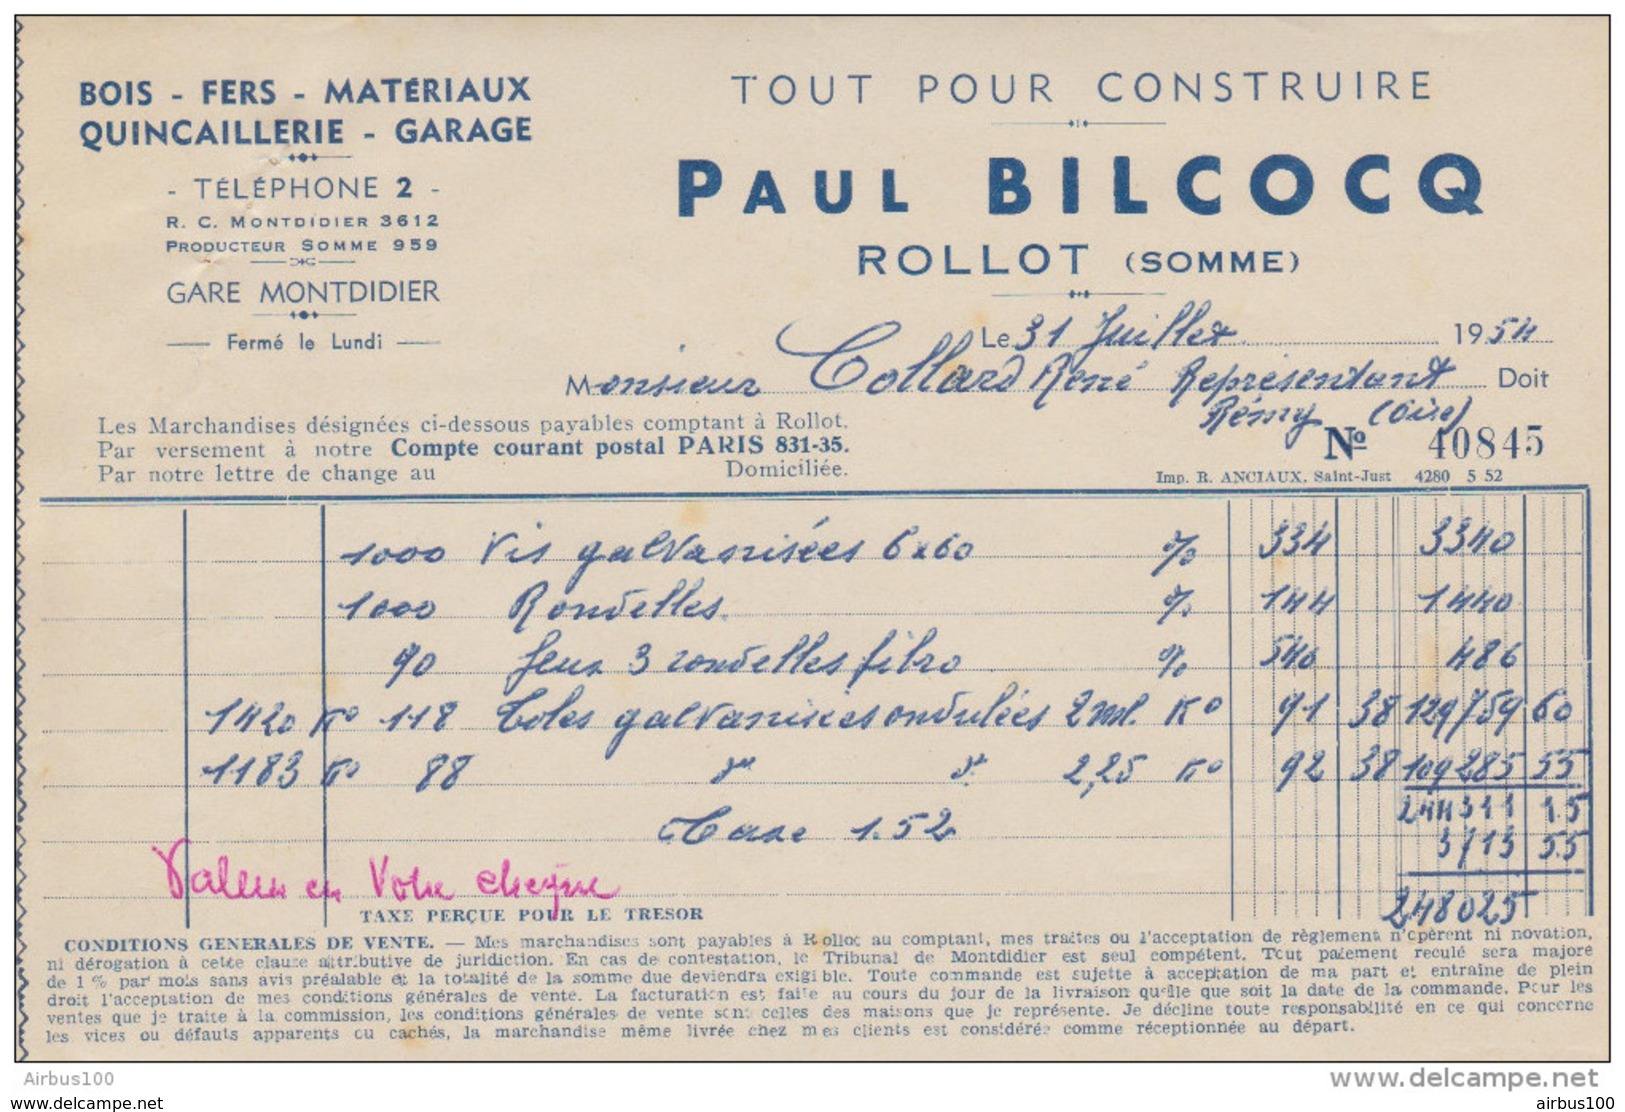 FACTURE 31 JUILLET 1954 PAUL BILCOCQ ROLLOT SOMME BOIS FER QUINCAILLERIE GARAGE - Droguerie & Parfumerie